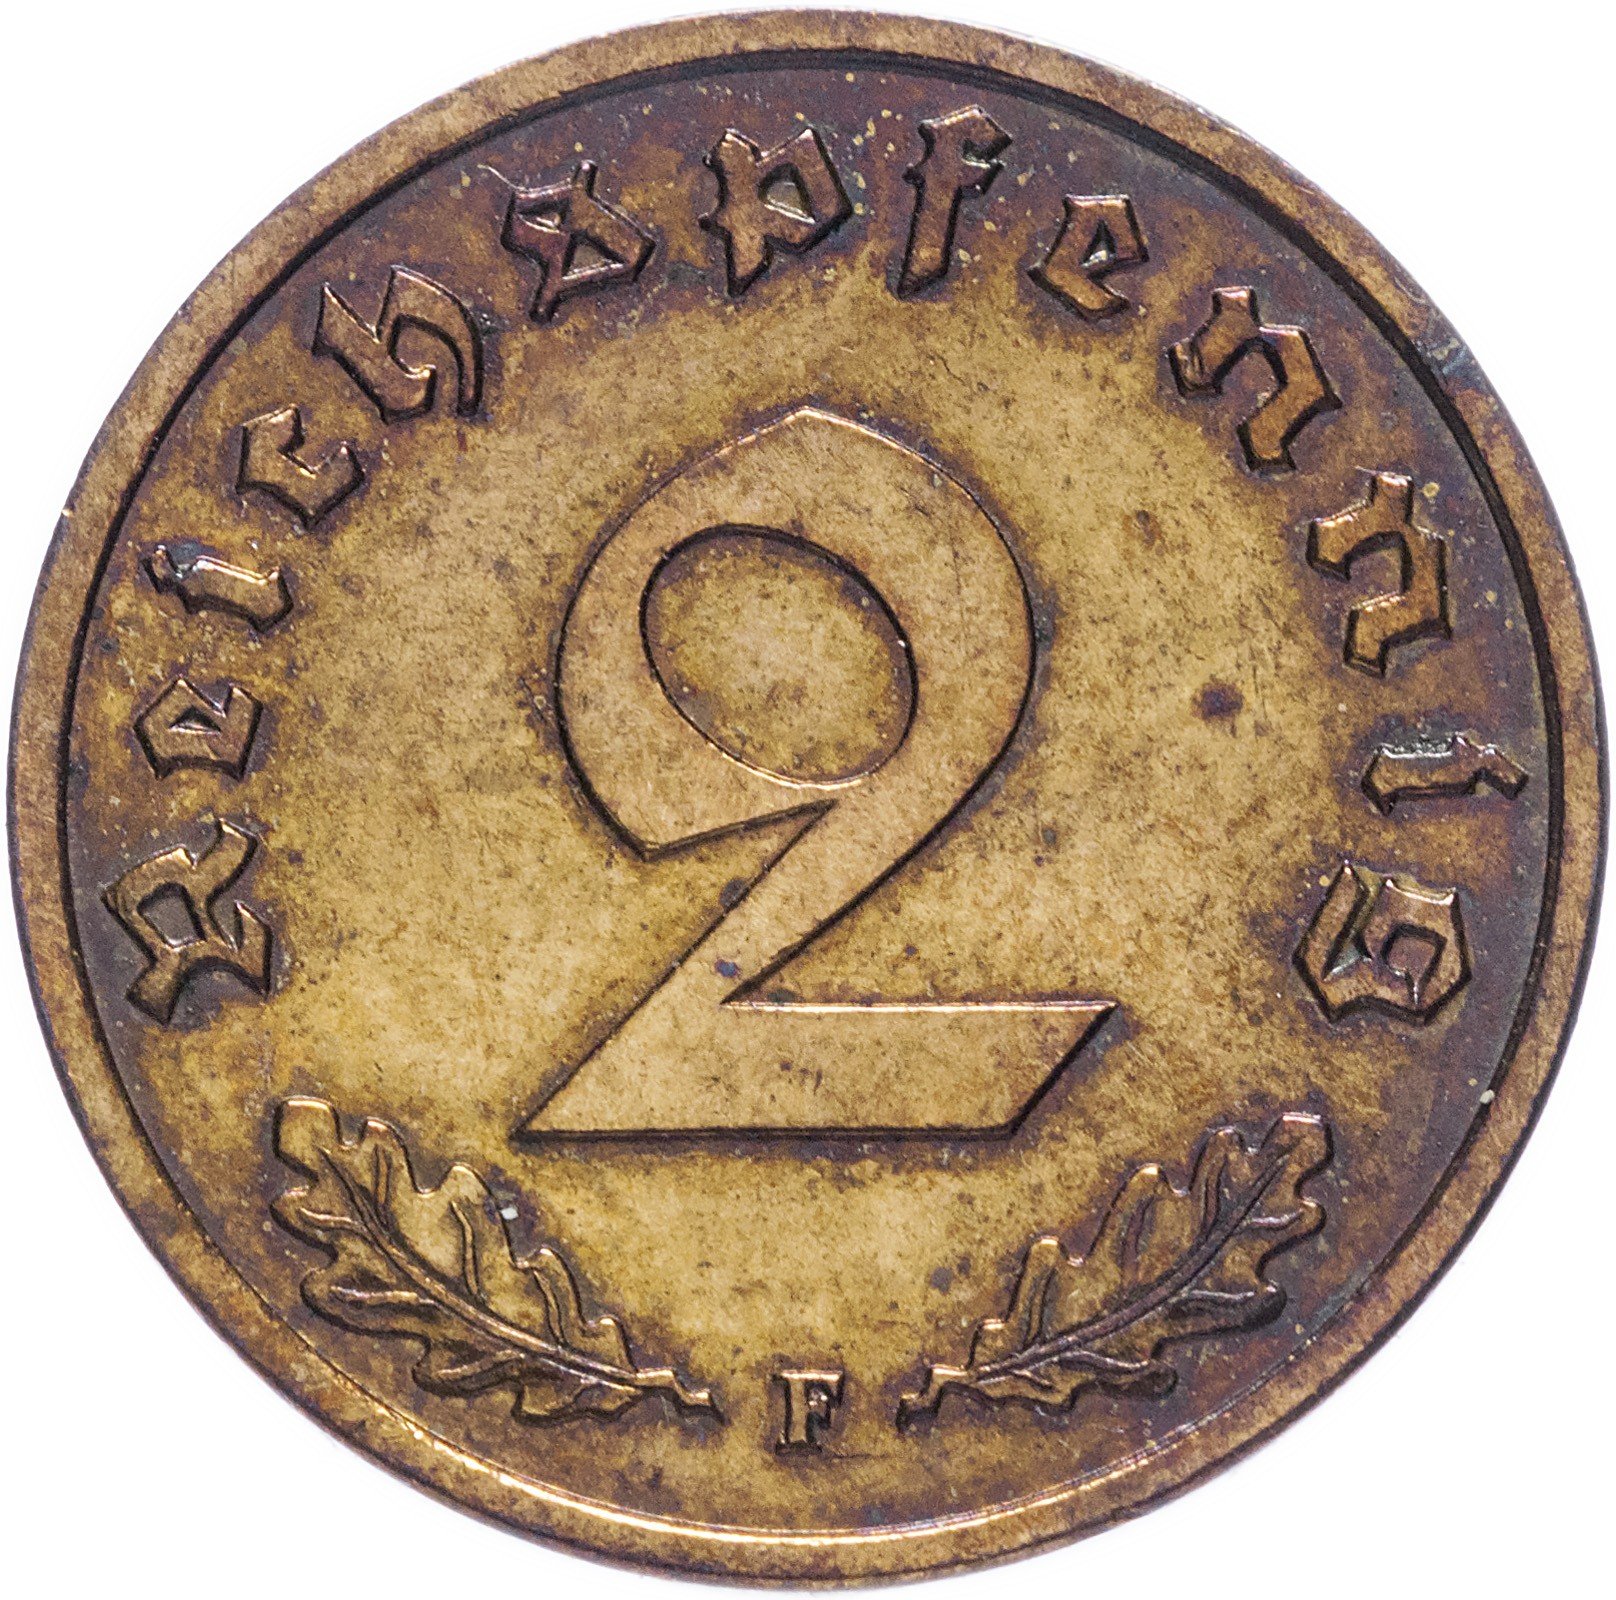 Сколько стоит фашистская монета. Рейх 2 пфеннига 1937. 1 Рейхспфенниг 1937 третий Рейх монета. Германия (третий Рейх) Reichspfennig 1941.